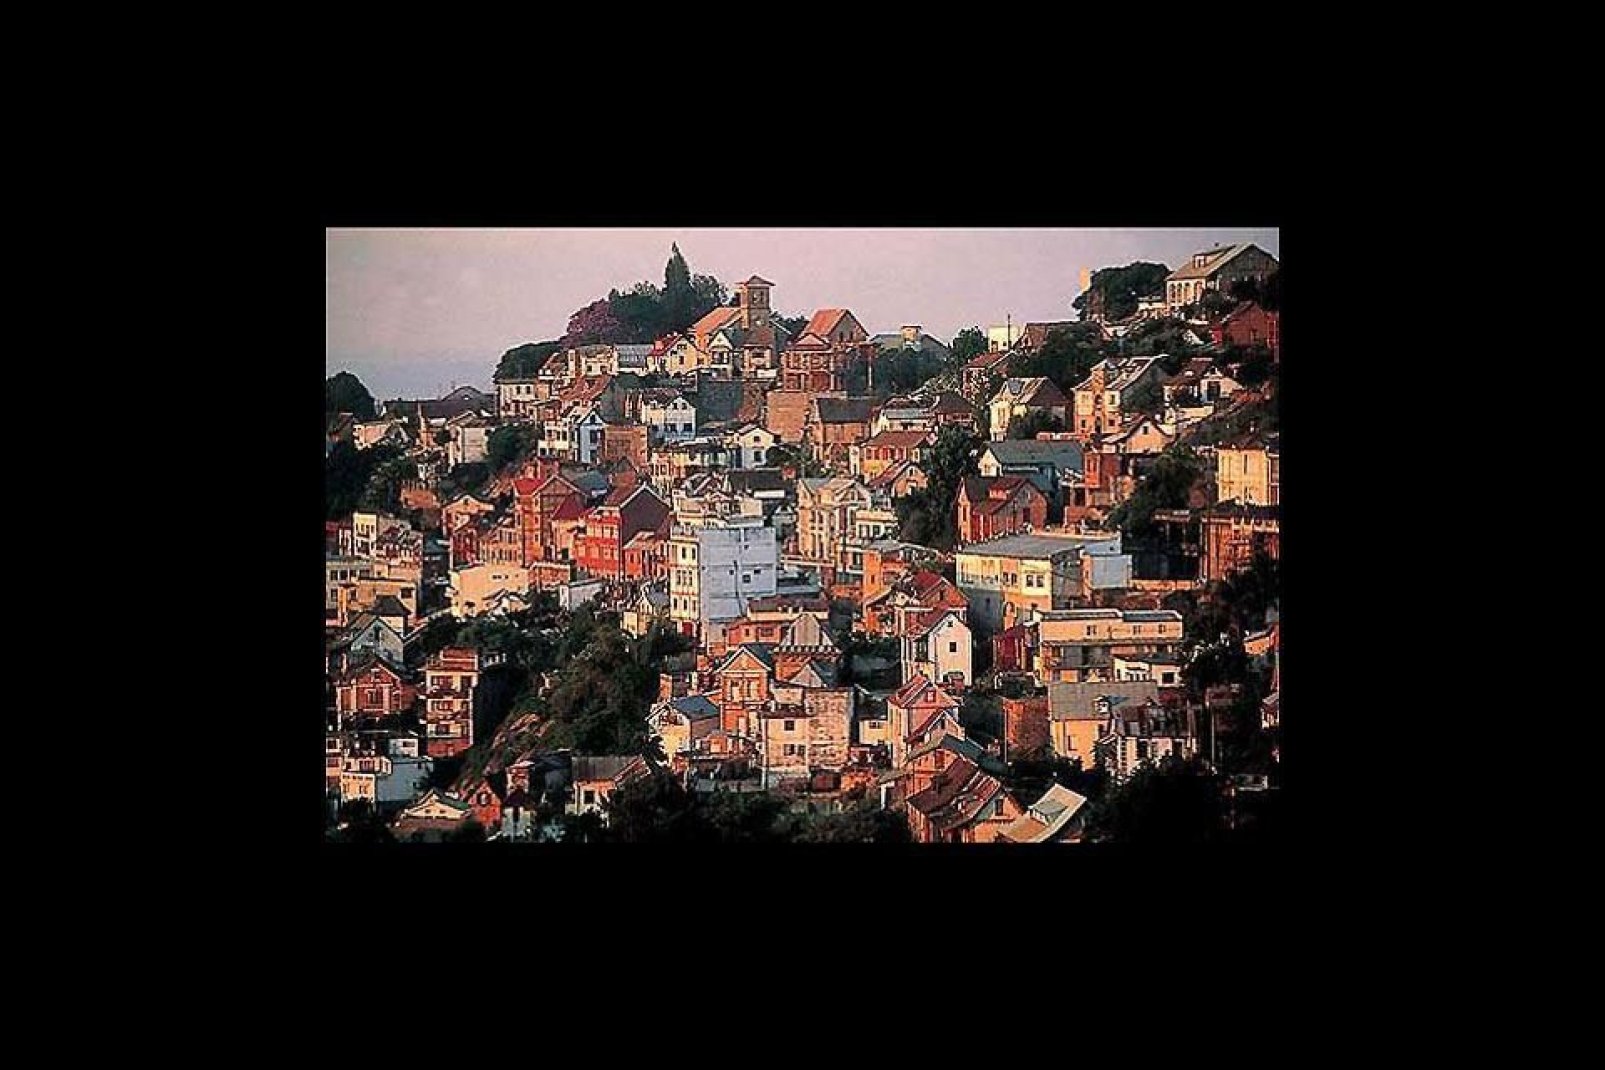 Die Festungsanlage Antananarivo wurde auf zwölf verschiedenen Hügeln erbaut, was ihr ein ganz besonderes Erscheinungsbild gibt.